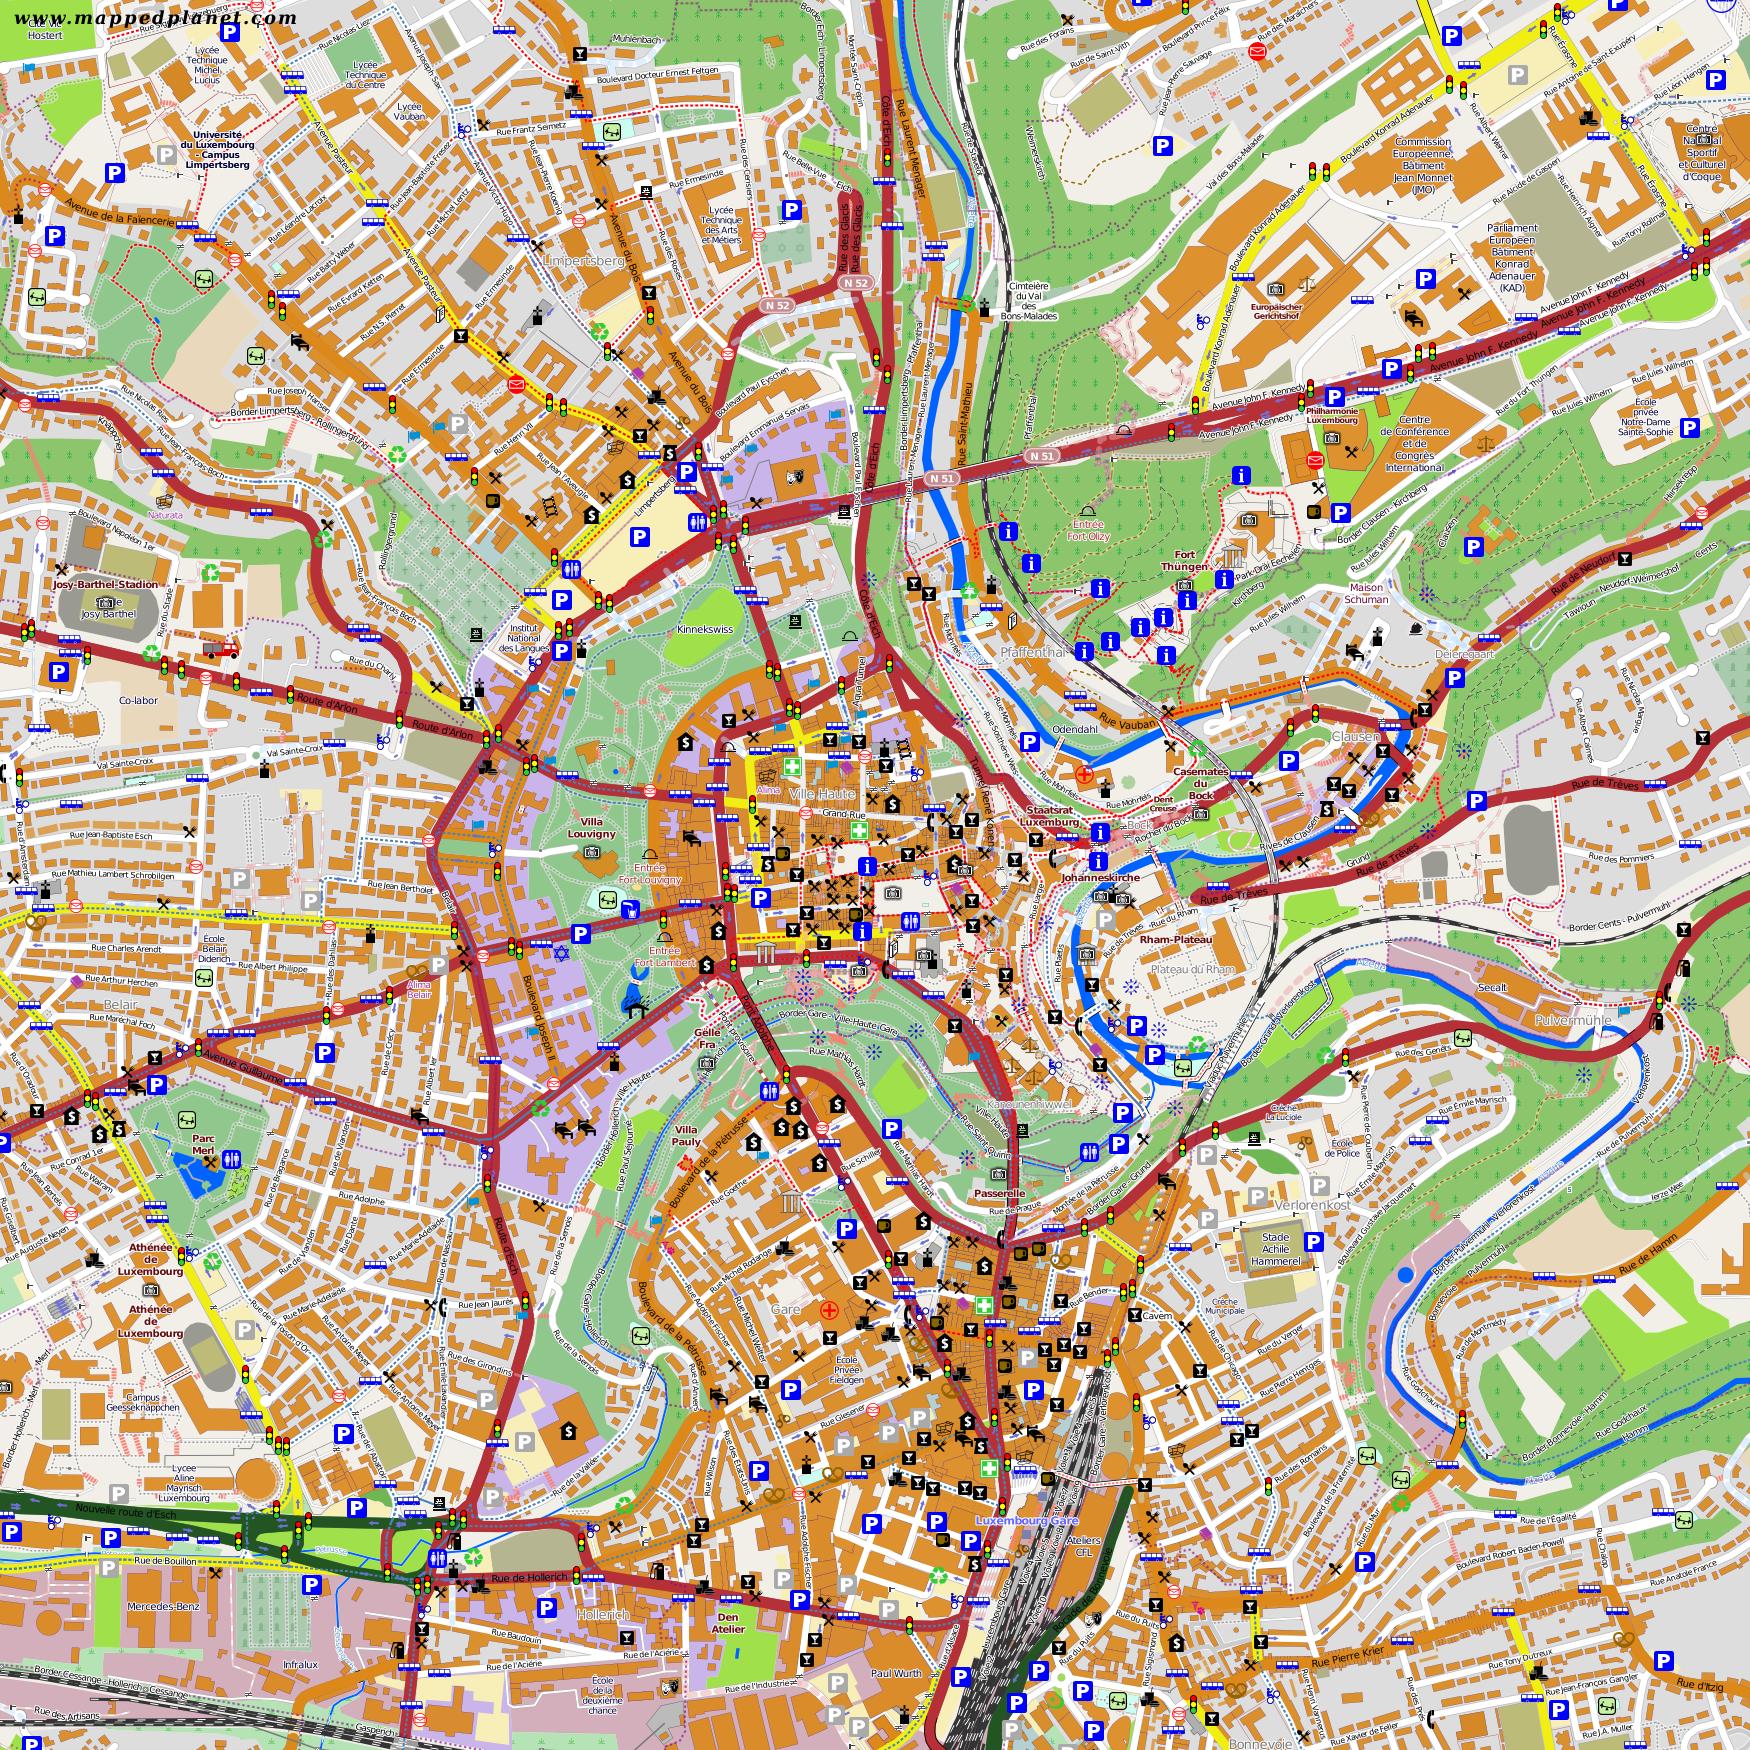 Luxembourg city map - Stadtplan von Luxemburg-Stadt ...